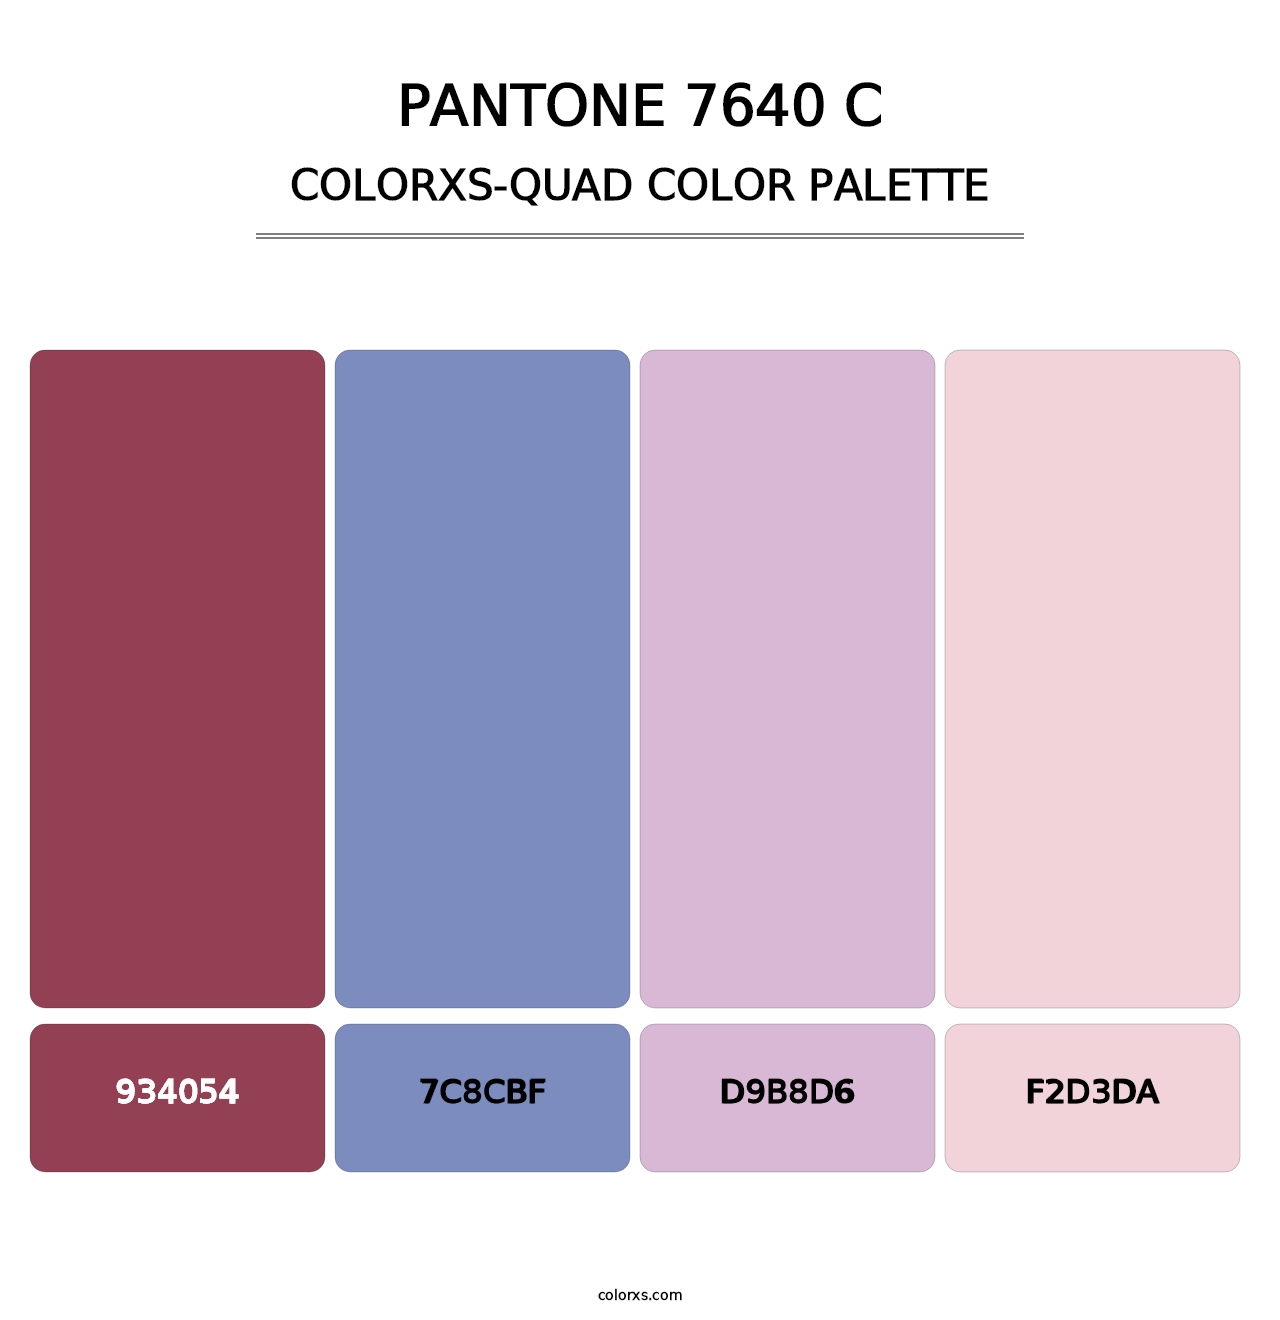 PANTONE 7640 C - Colorxs Quad Palette